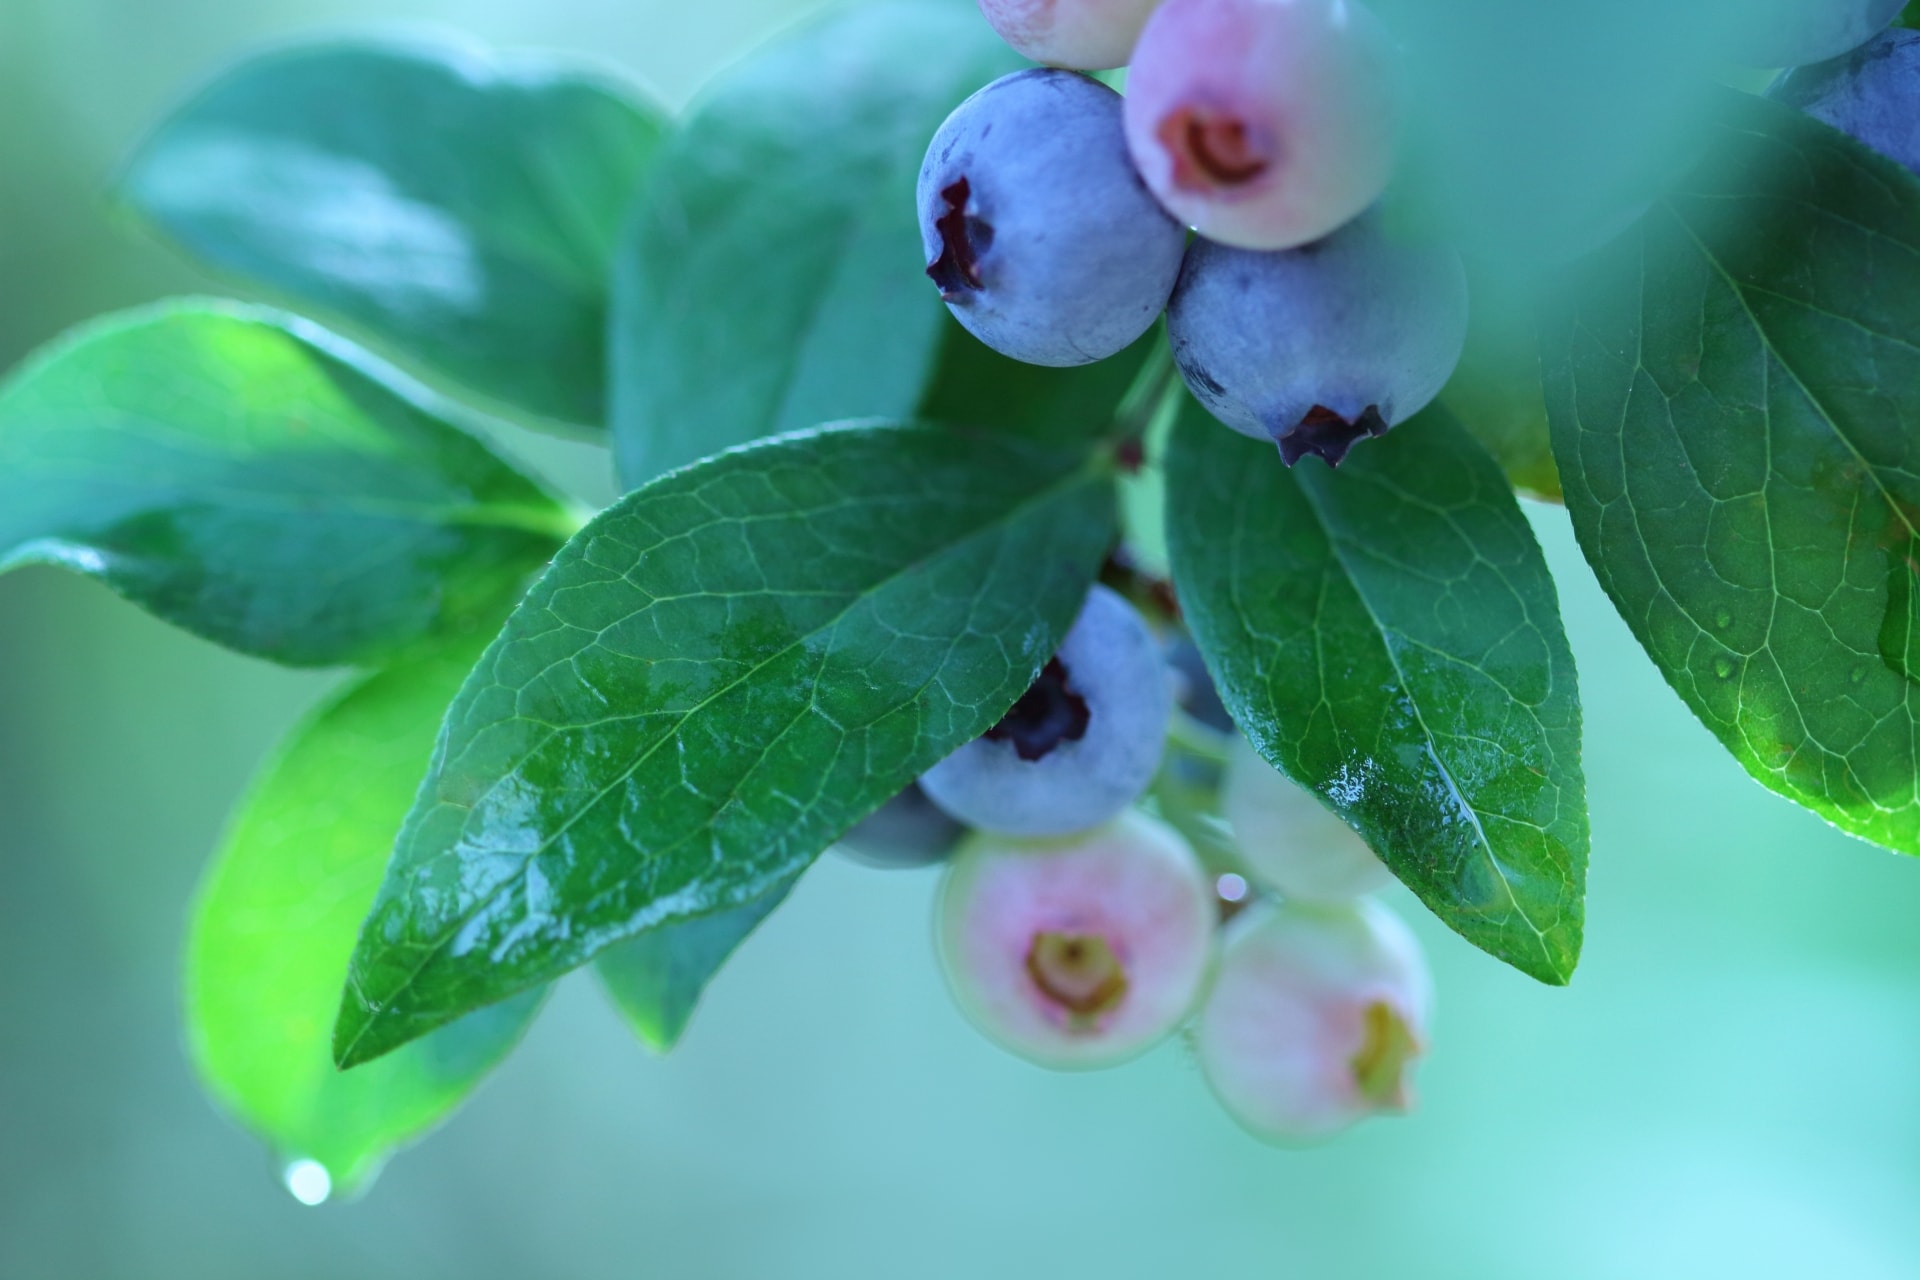 ブルーベリーにつくカイガラムシの駆除や予防方法とは ブルーベリーの栽培 鉢植え 剪定 肥料 方法と健康効果ナビ